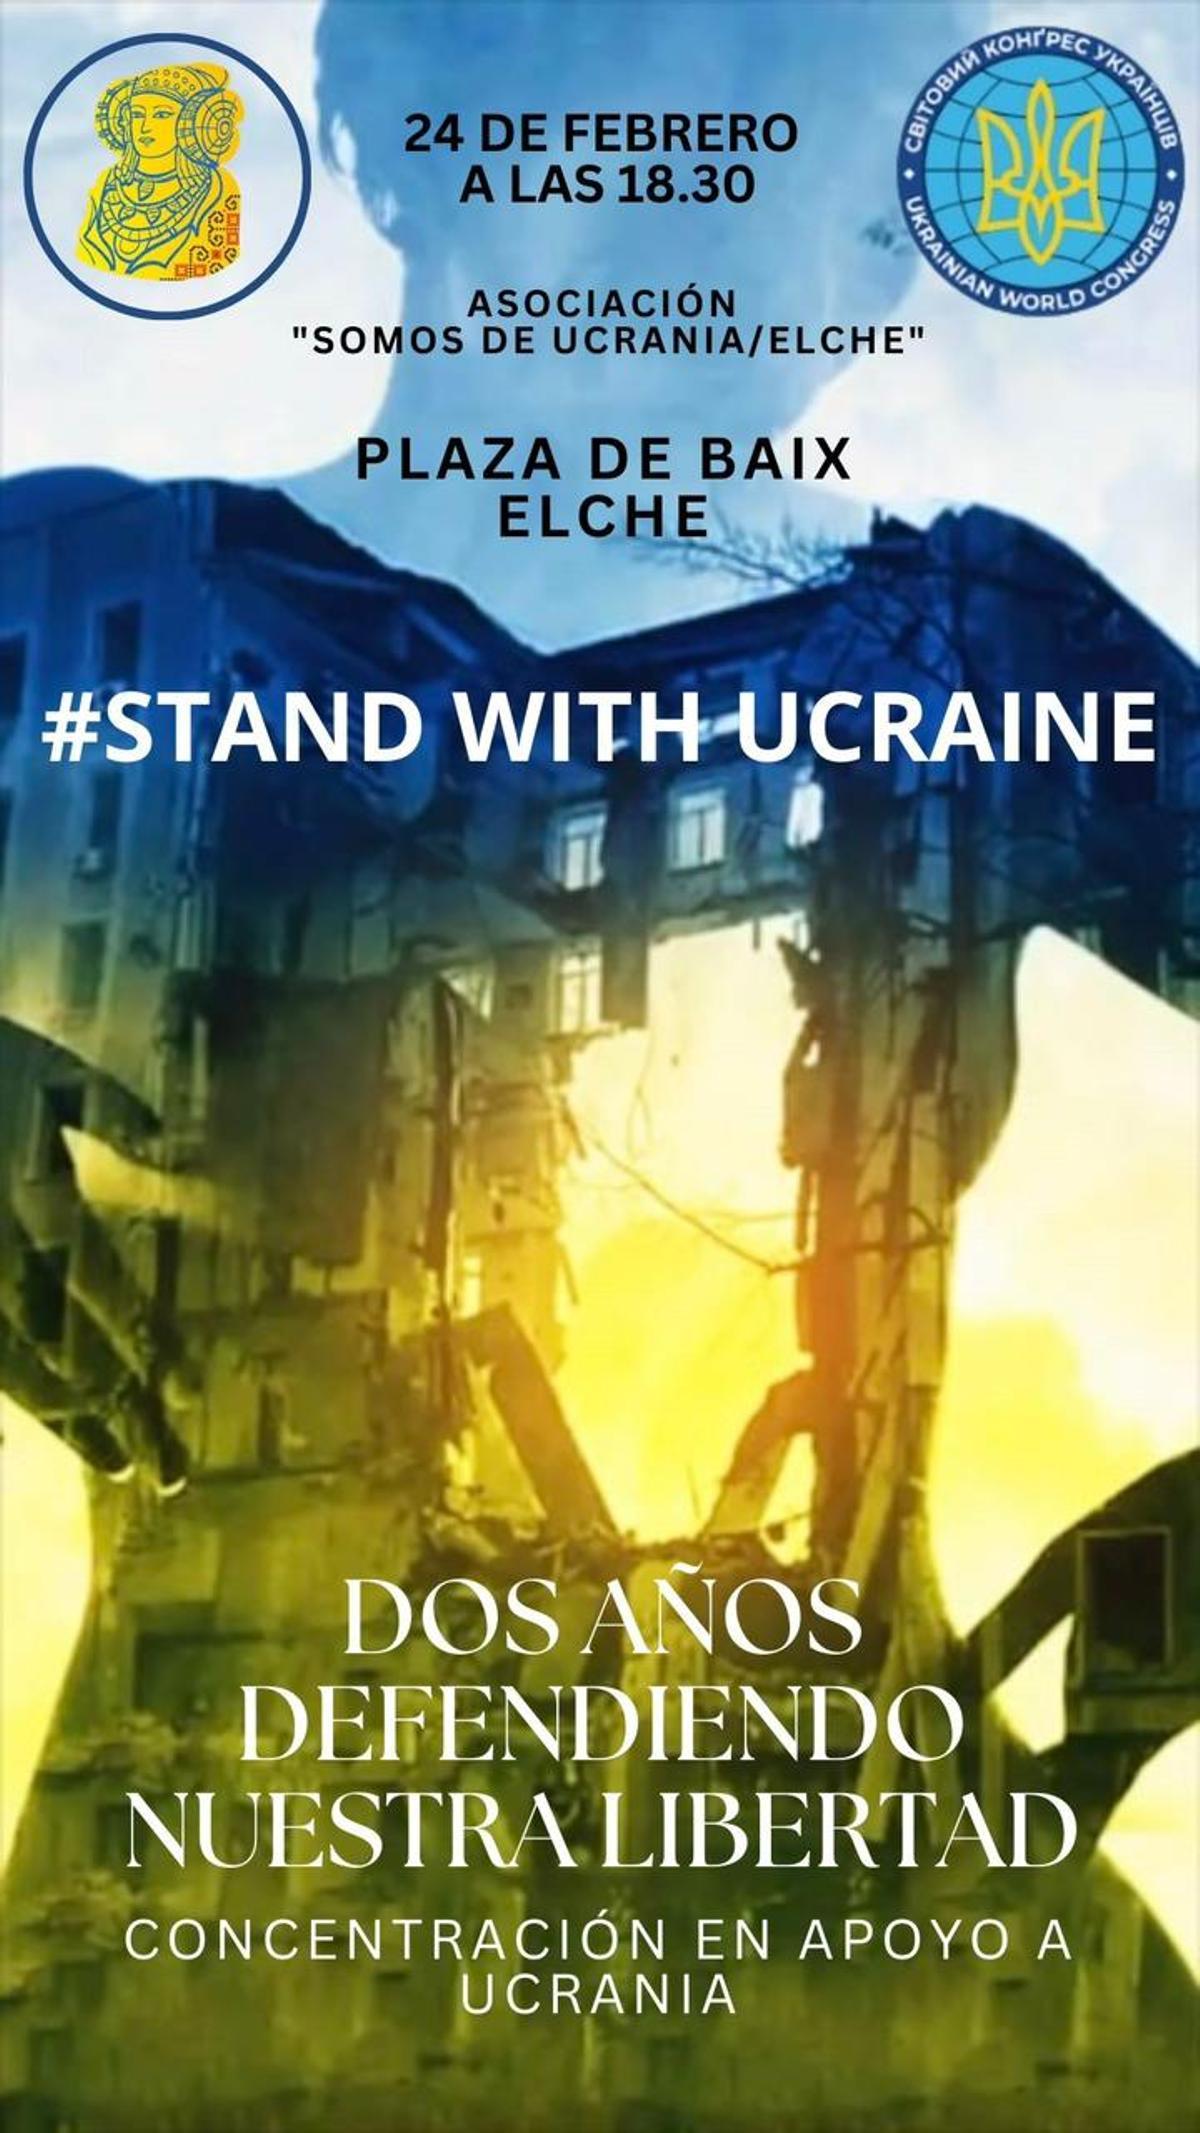 El colectivo ucraniano ha convocado el acto en la Plaça Baix este sábado a las 18.30 horas